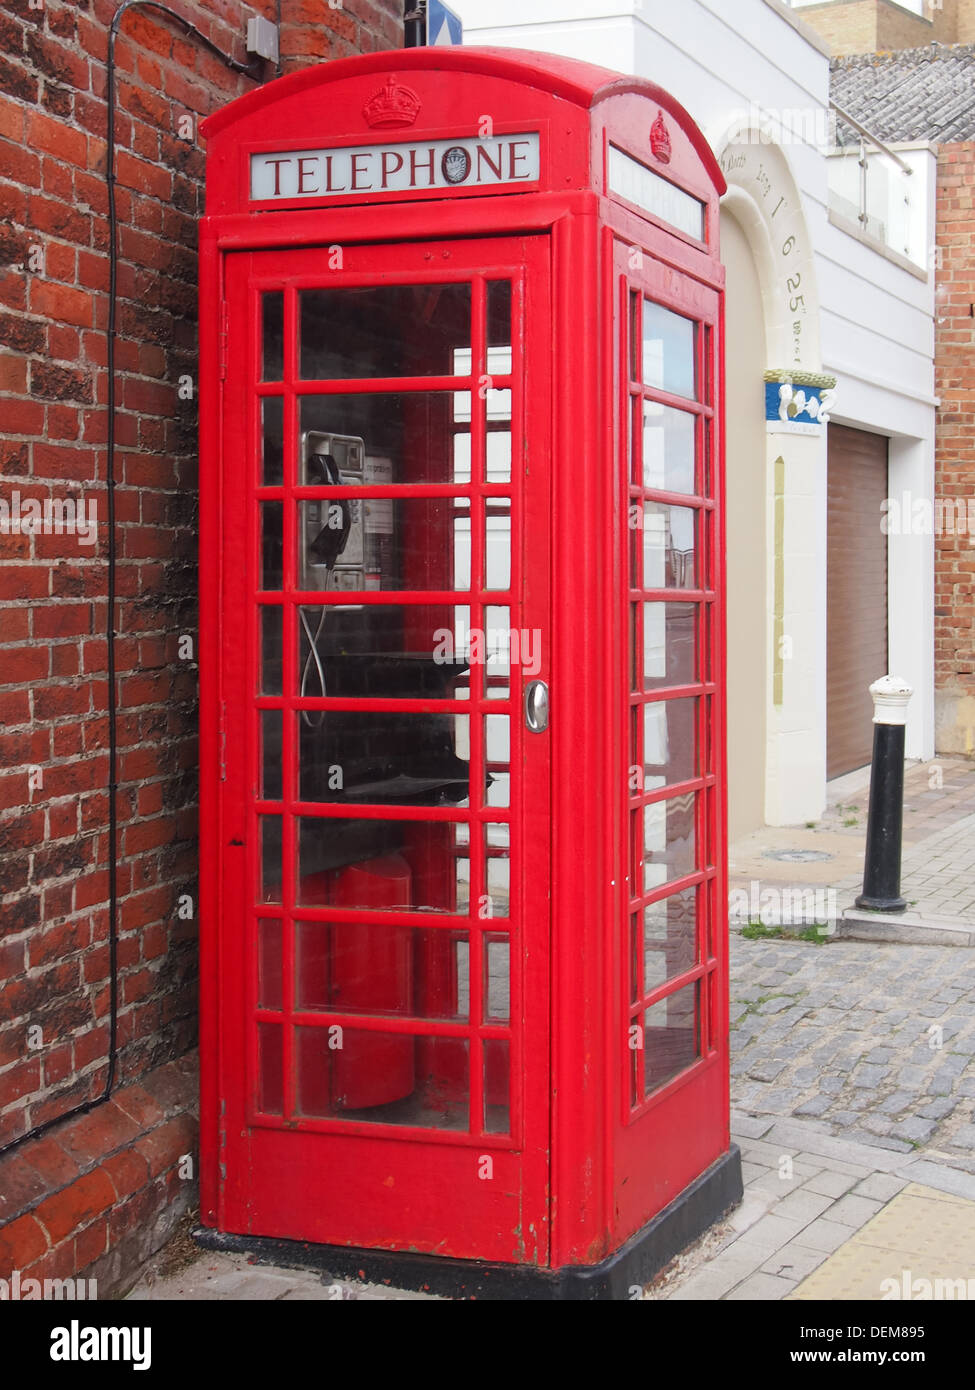 Une vieille boîte de téléphone rouge britannique Création K6 à Portsmouth, Angleterre Banque D'Images